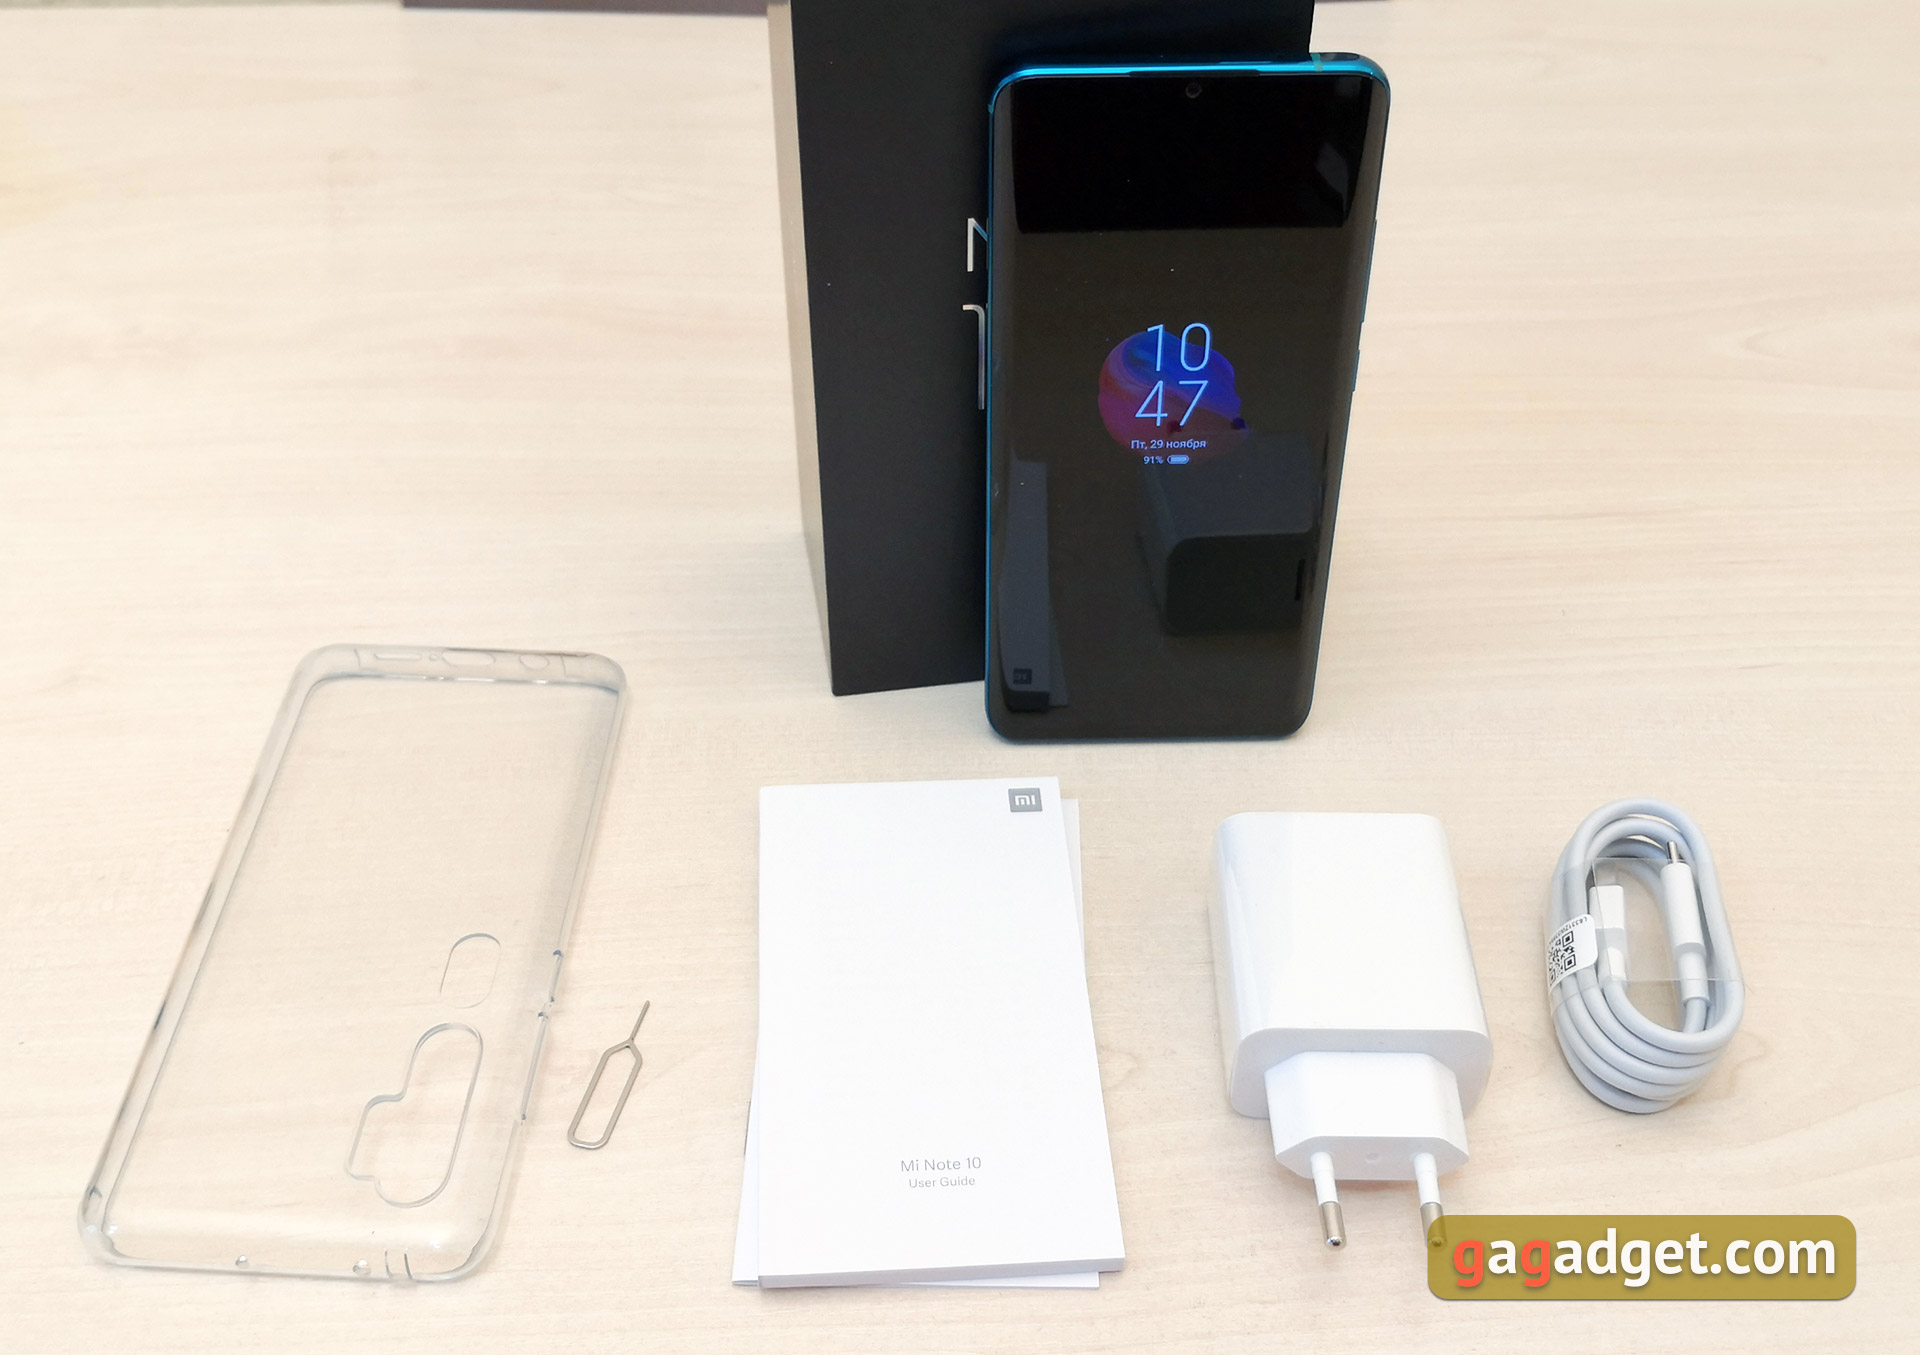 Recenzja Xiaomi Mi Note 10: pierwszy na świecie smartfon z pentakamerą o rozdzielczości 108 megapikseli-4